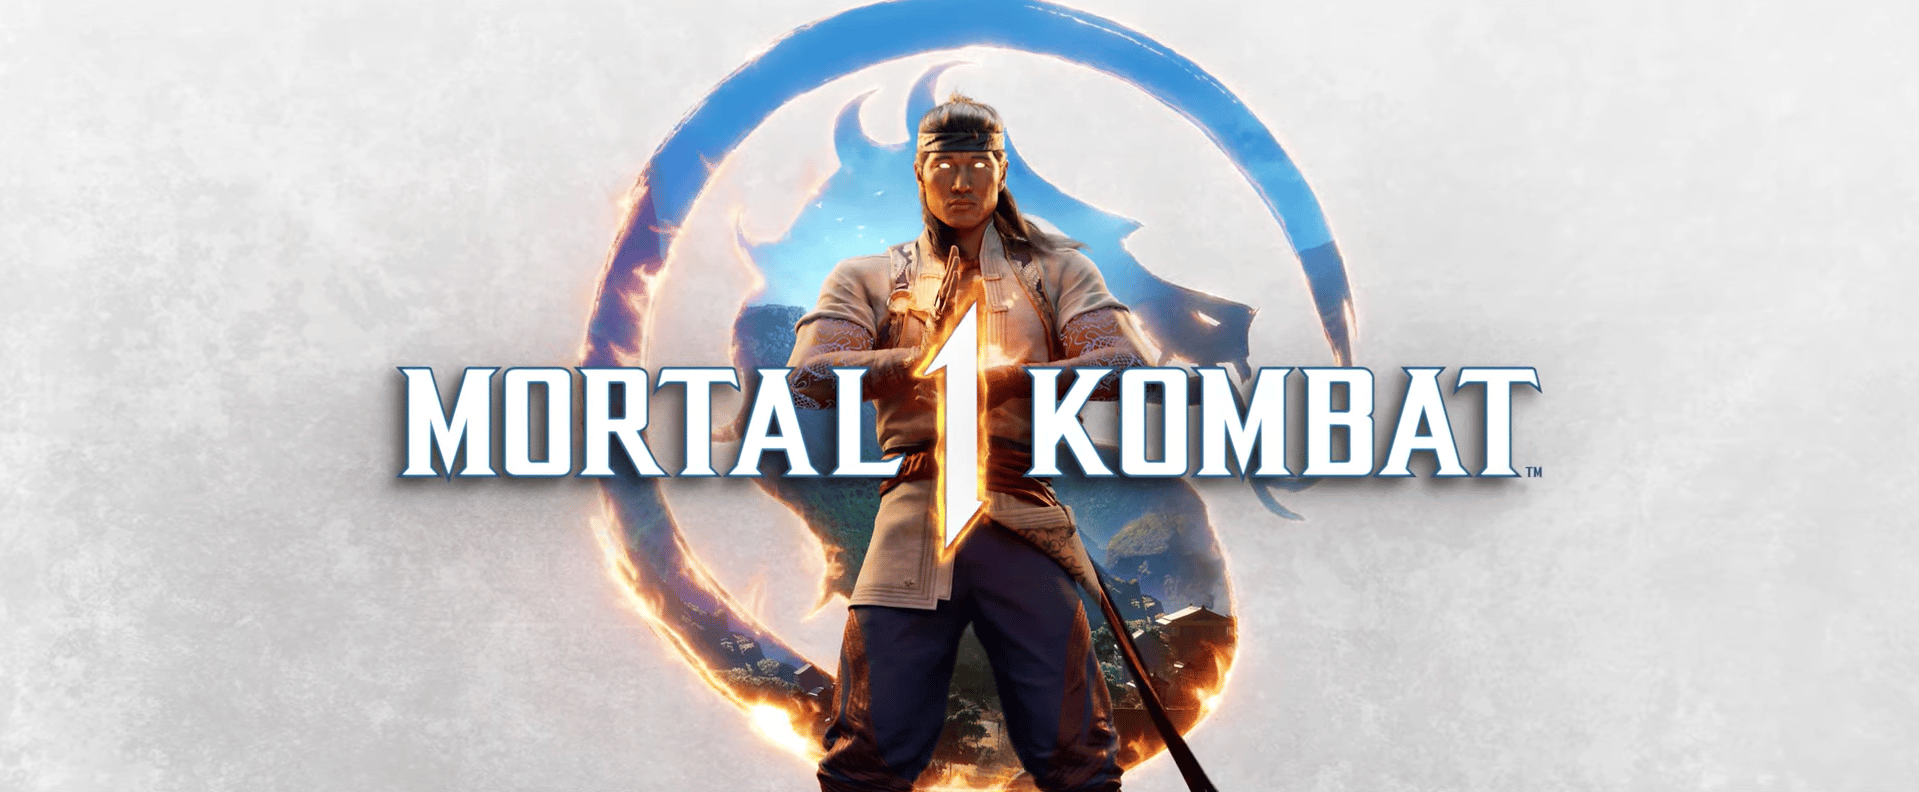 Mortal Kombat 1 - Un leak annonce des personnages des séries Amazon - GEEKNPLAY Home, News, Nintendo Switch, PC, PlayStation 5, Xbox Series X|S